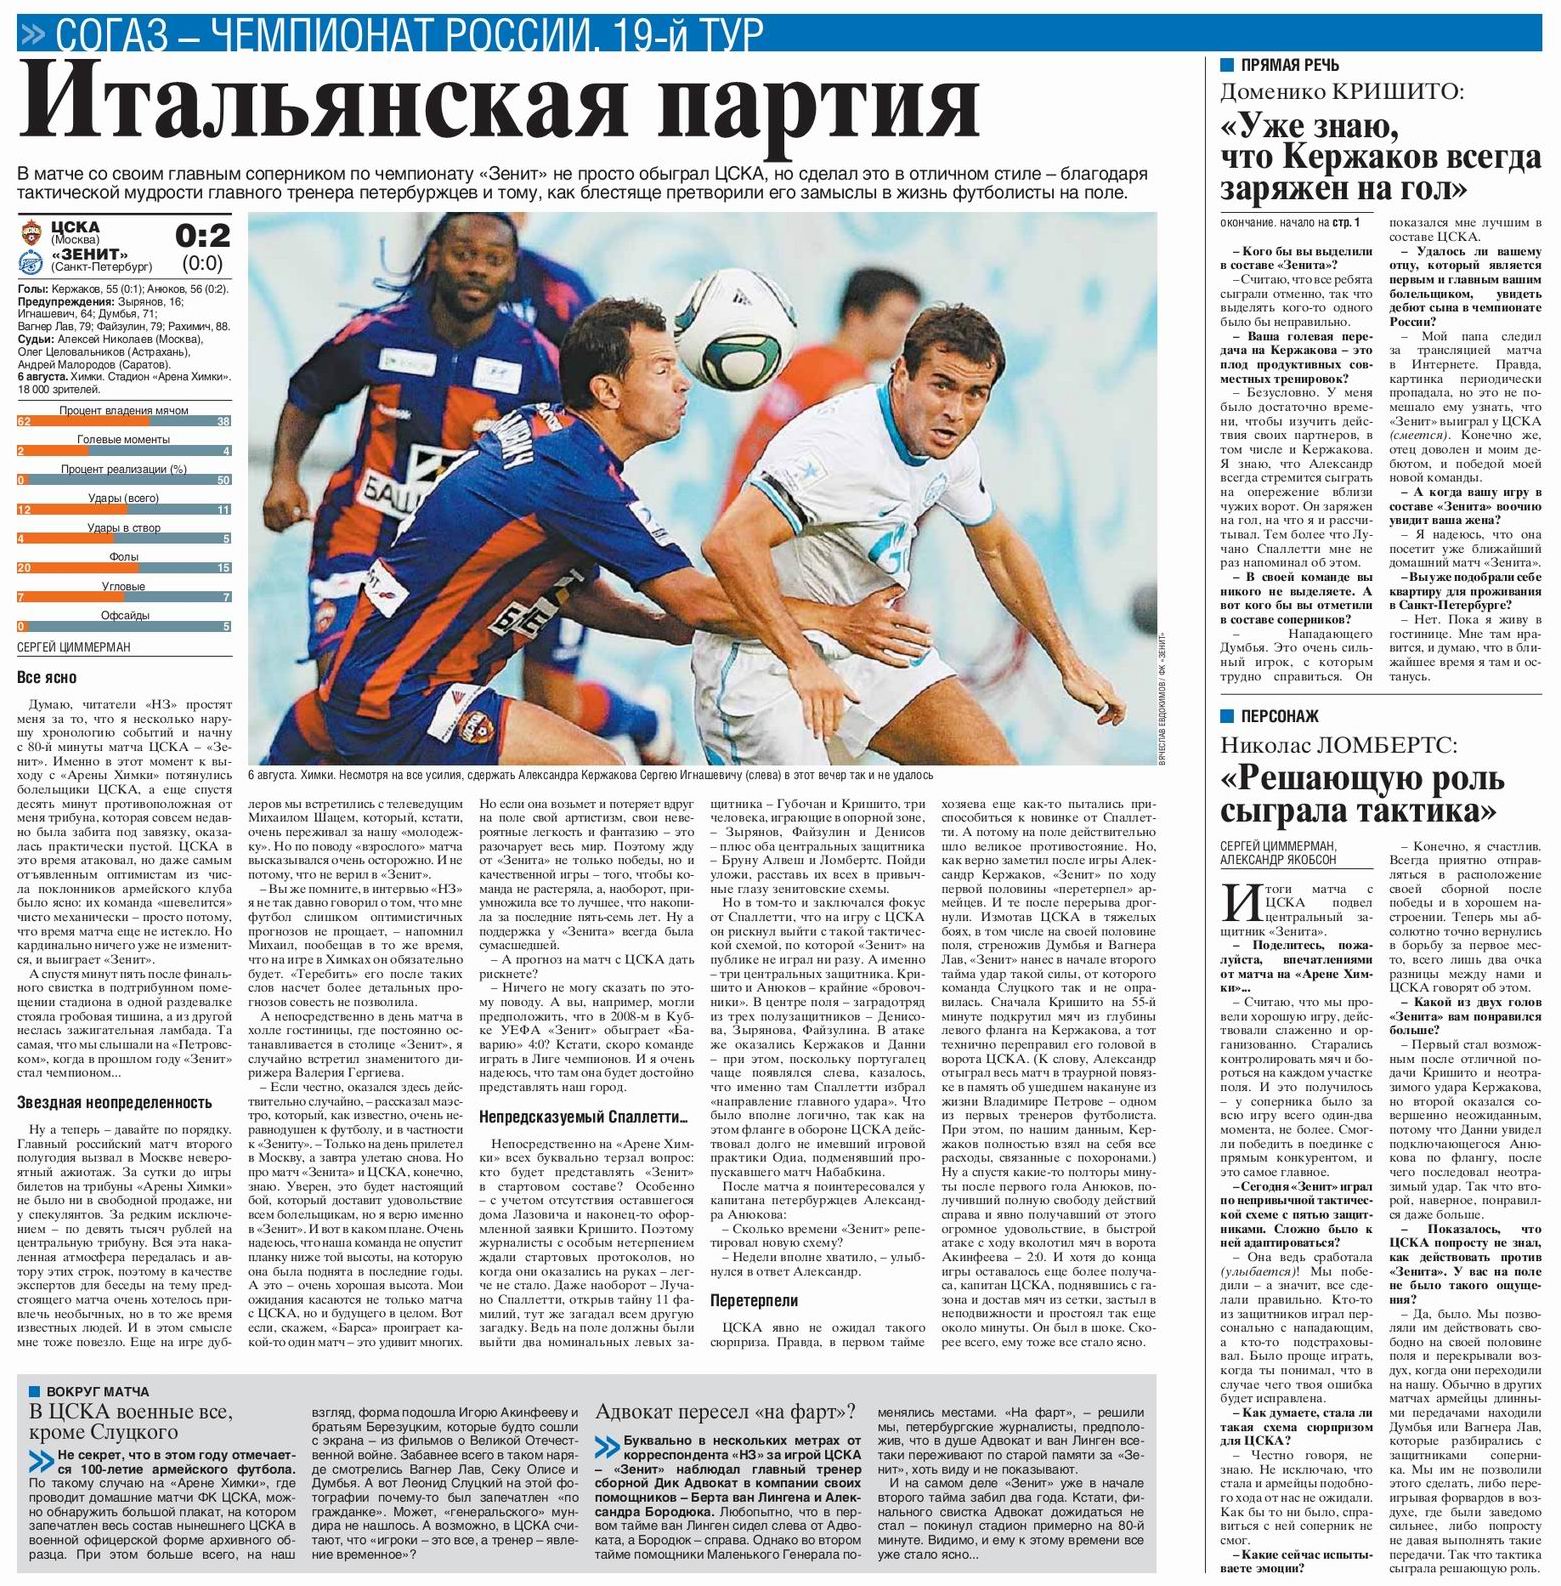 2011-08-06.CSKA-Zenit.1